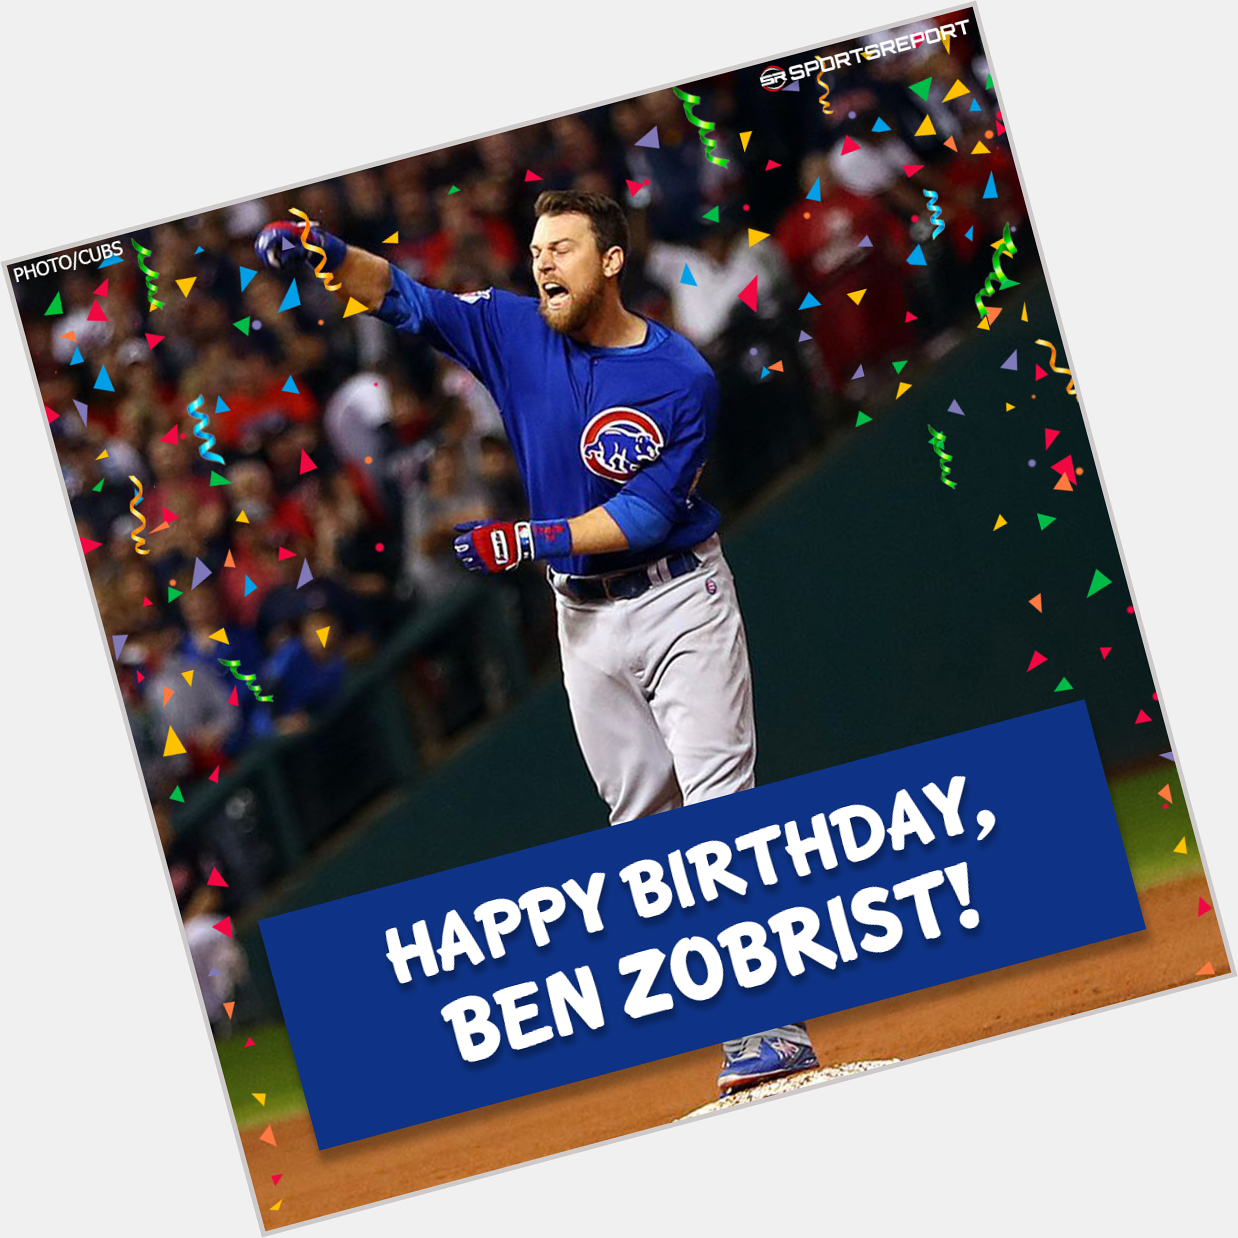 Happy Birthday to Legend, Ben Zobrist! 